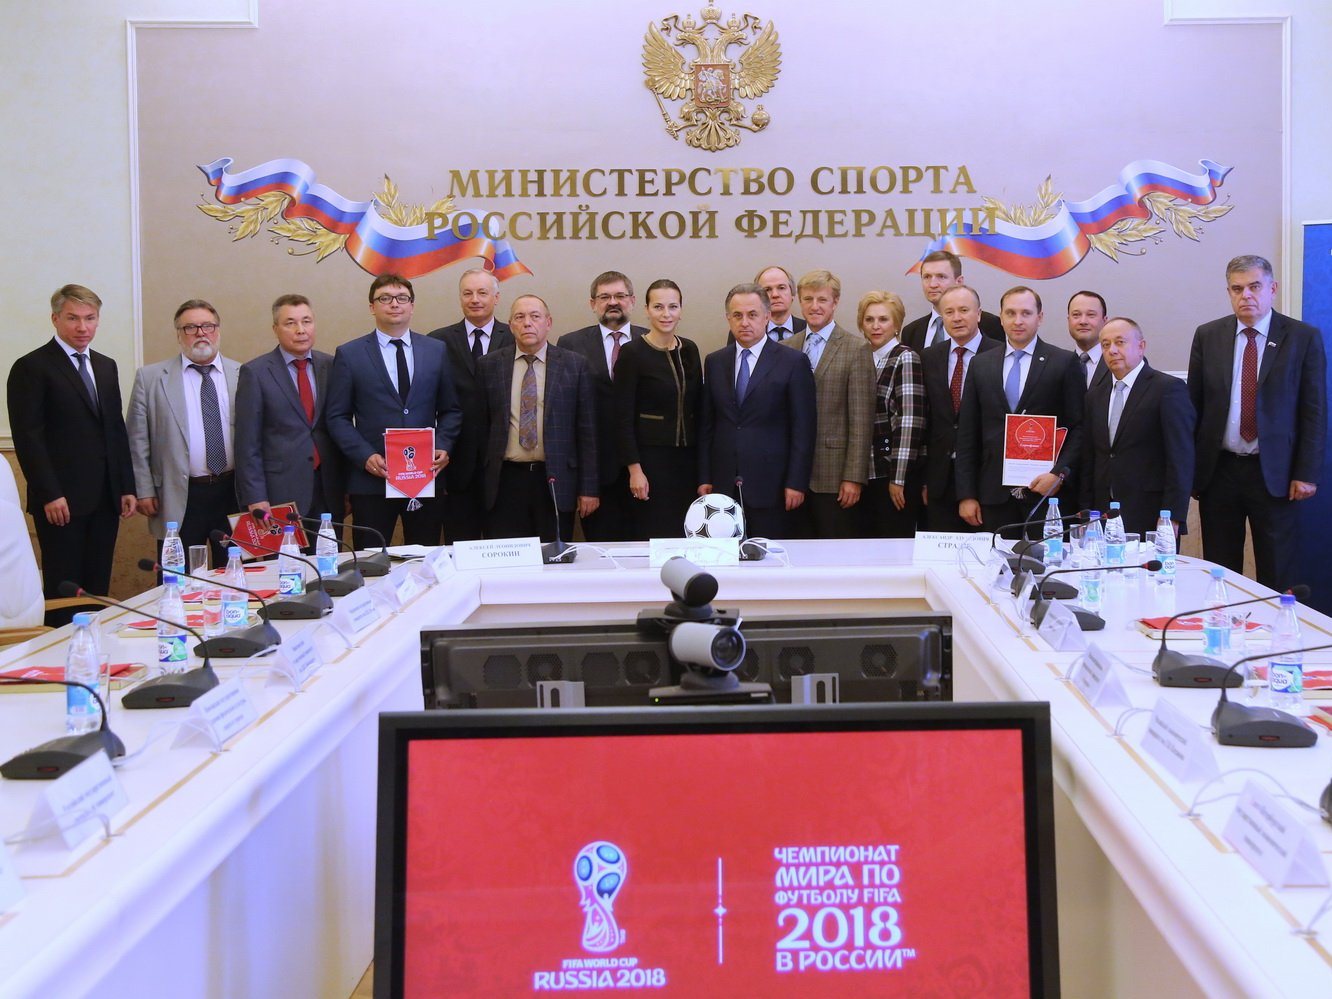 Скорректированы законы о подготовке и проведении в России ЧМ-2018 и Кубка конфедераций FIFA в 2017 году